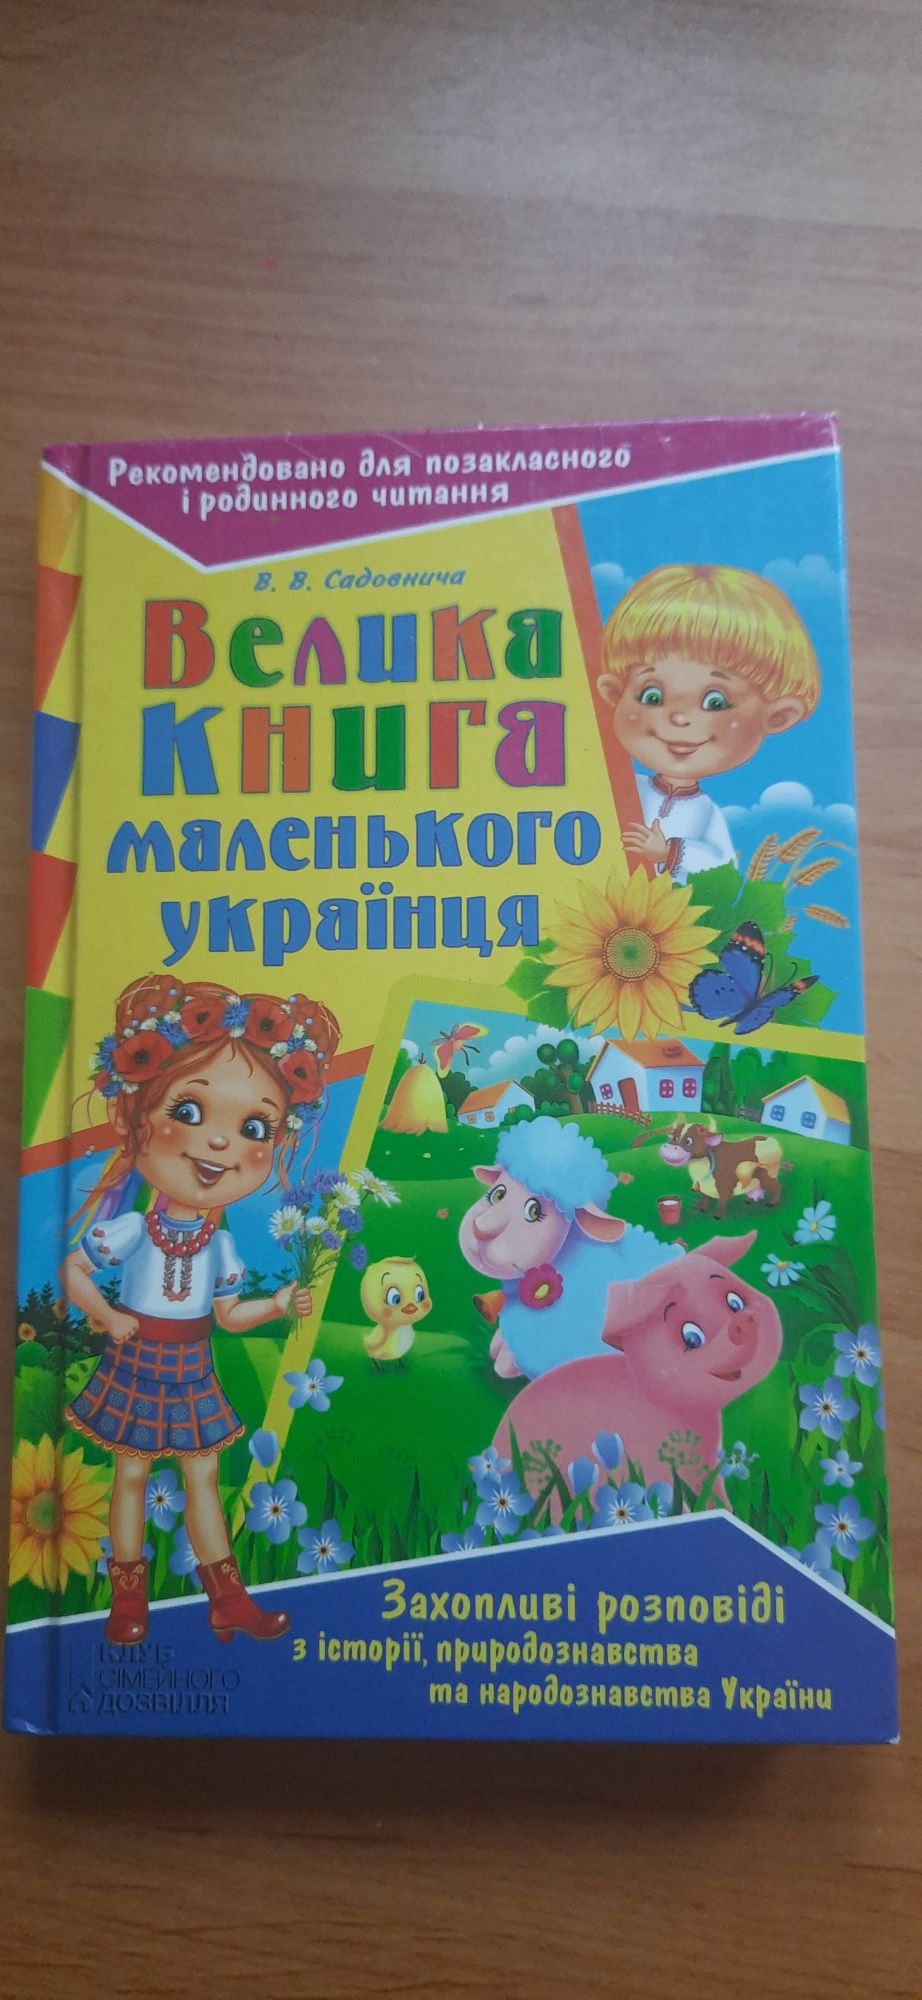 Велика книга маленького українця